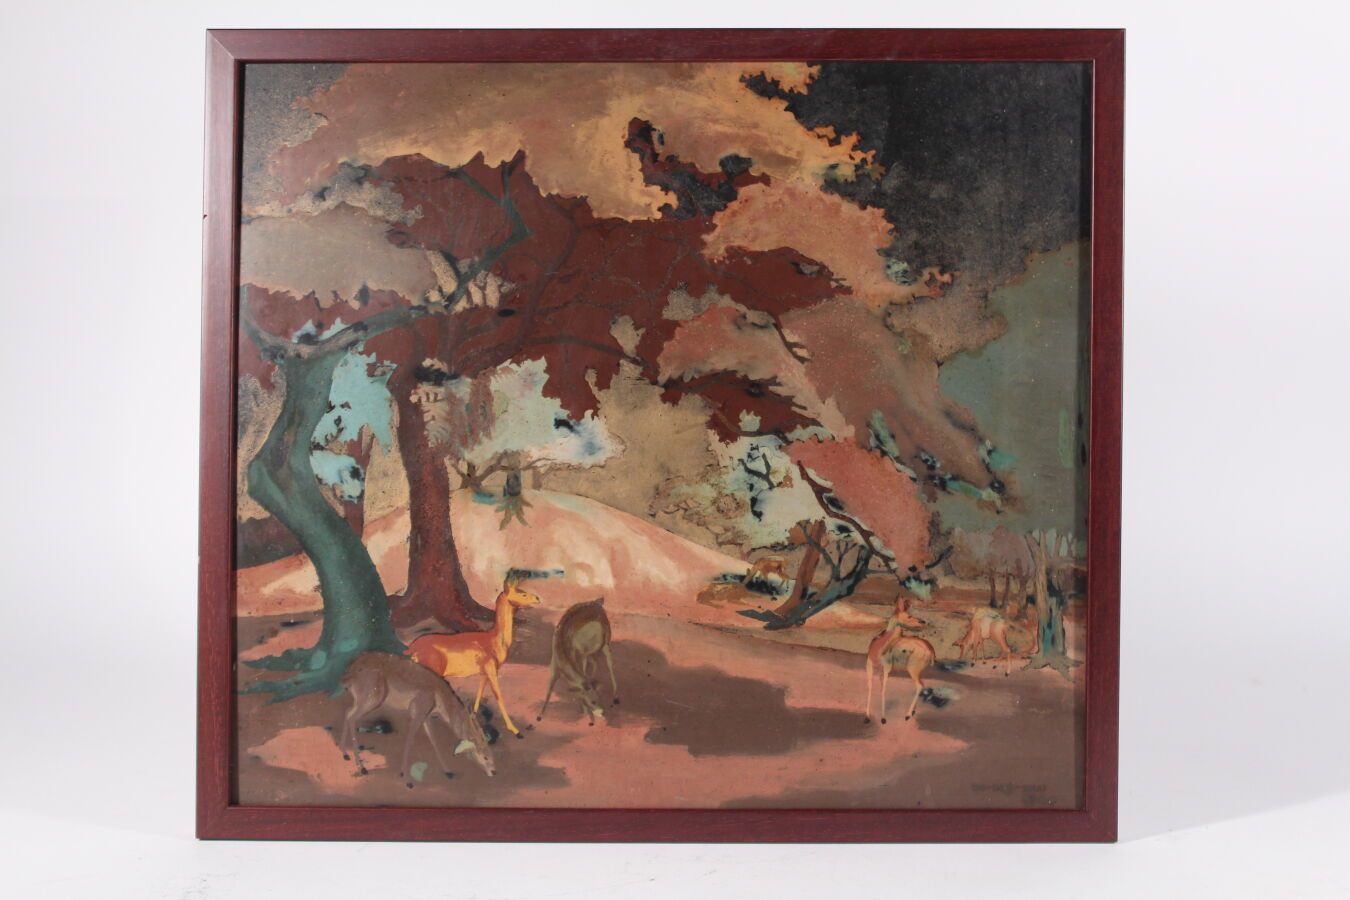 Null 阮富凯
多色漆板
有鹿的装饰，署名NG-PHU-KHAI，日期为1944年
35 x 40厘米